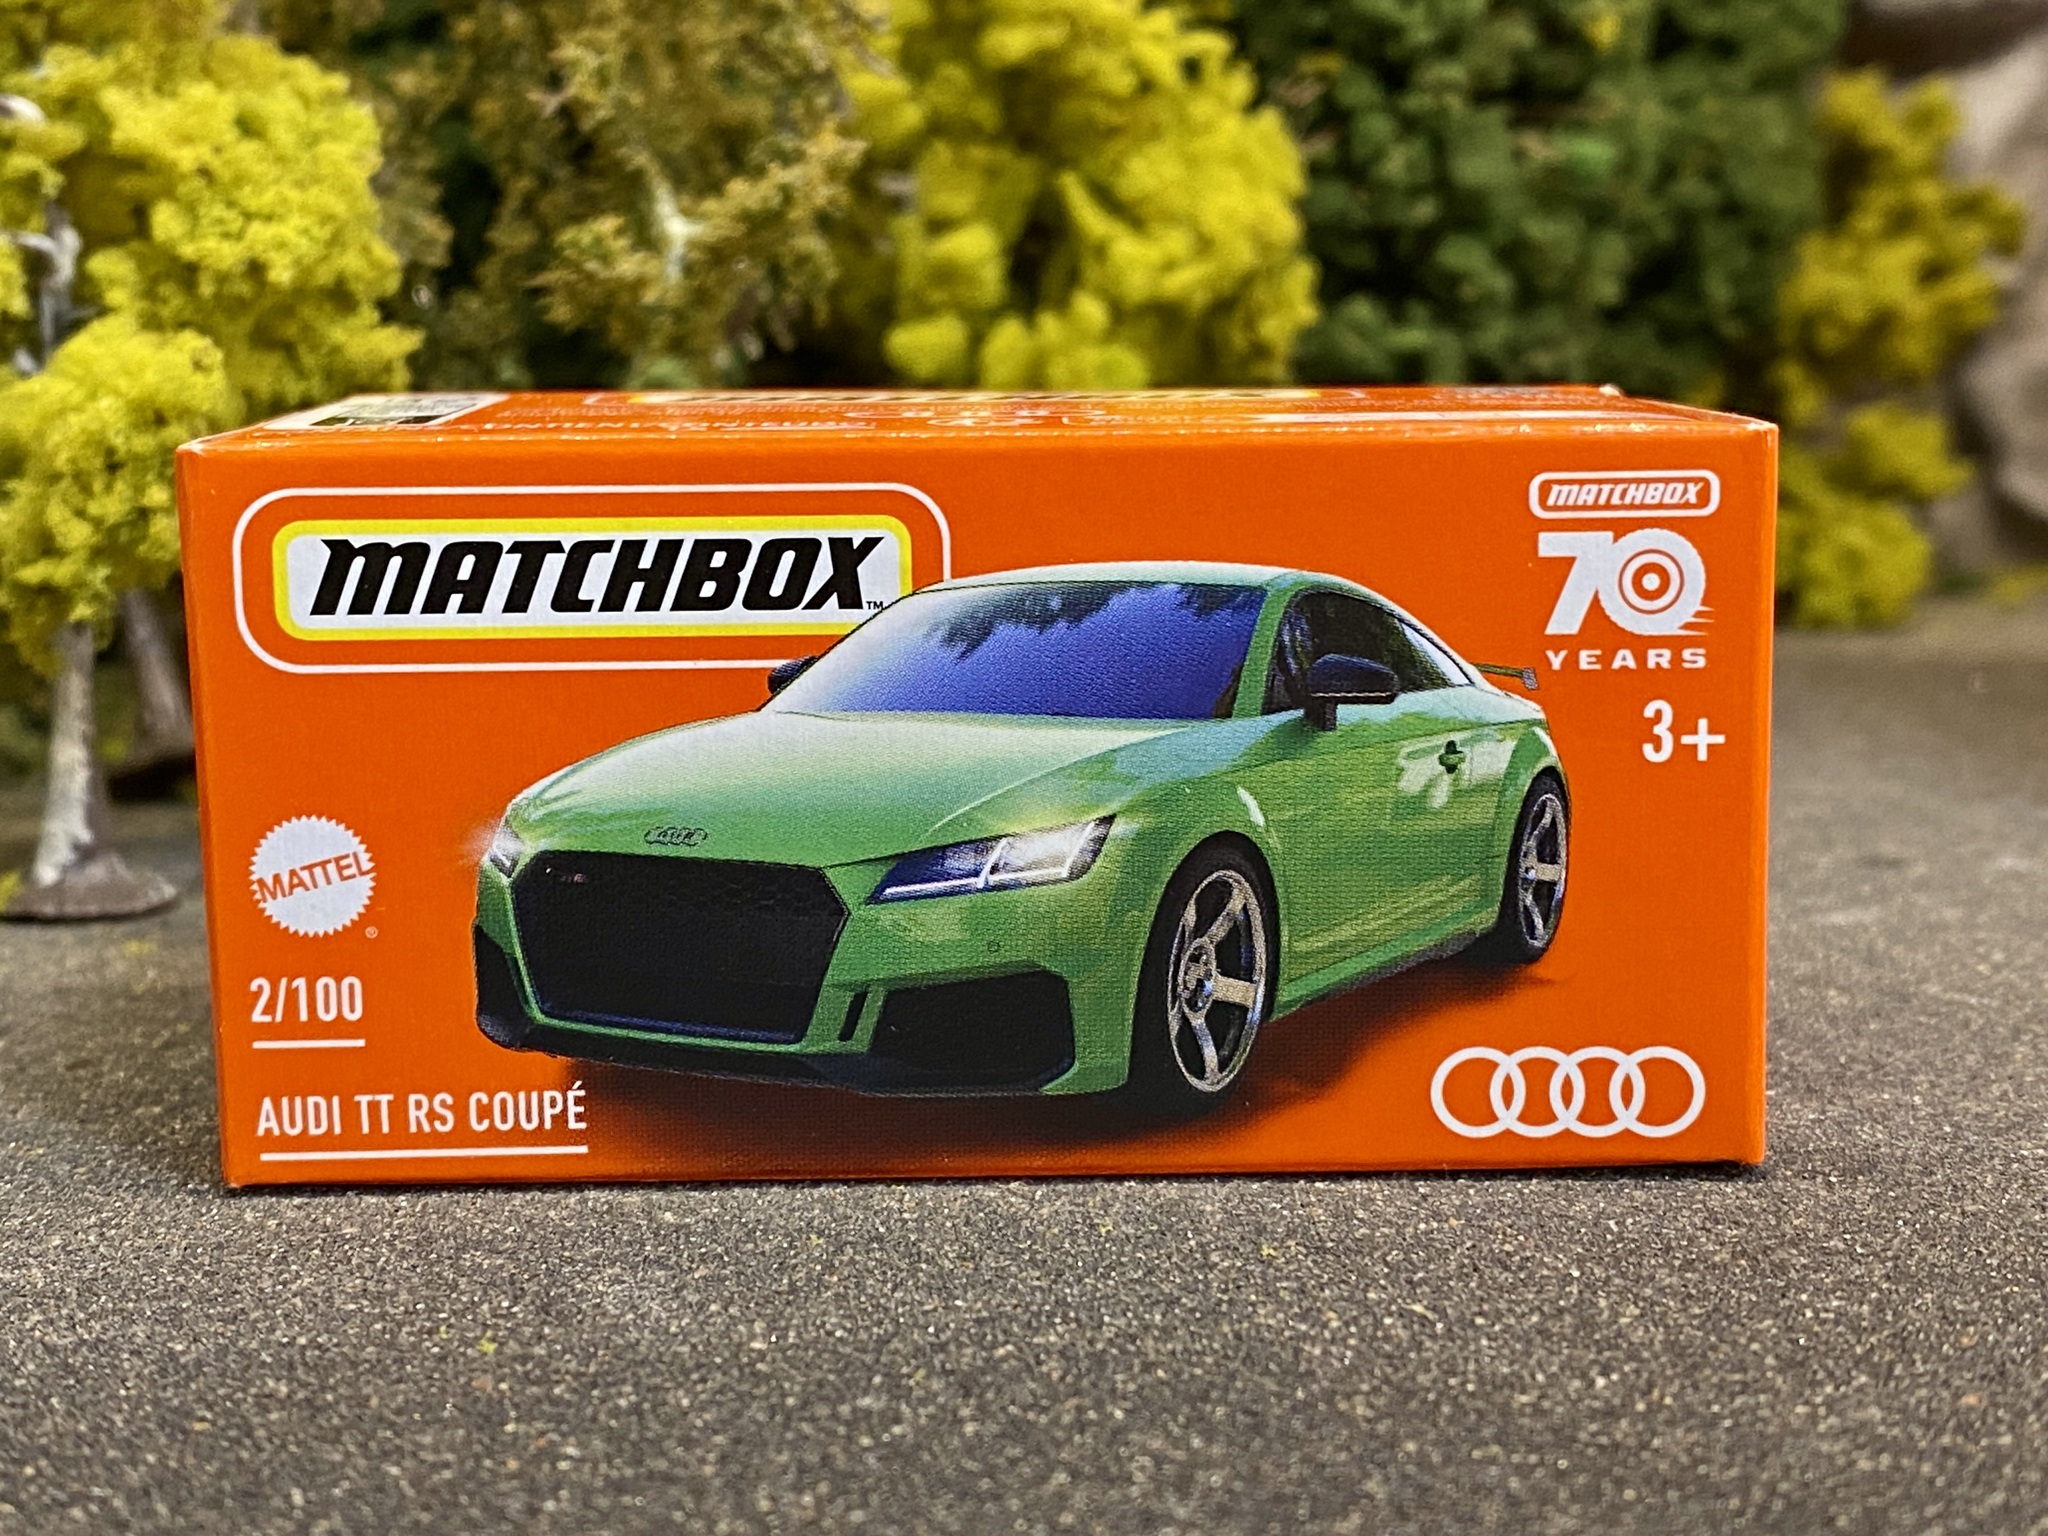 Skala 1/64 Matchbox 70 years - Audi TT RS Coupé 19' Green